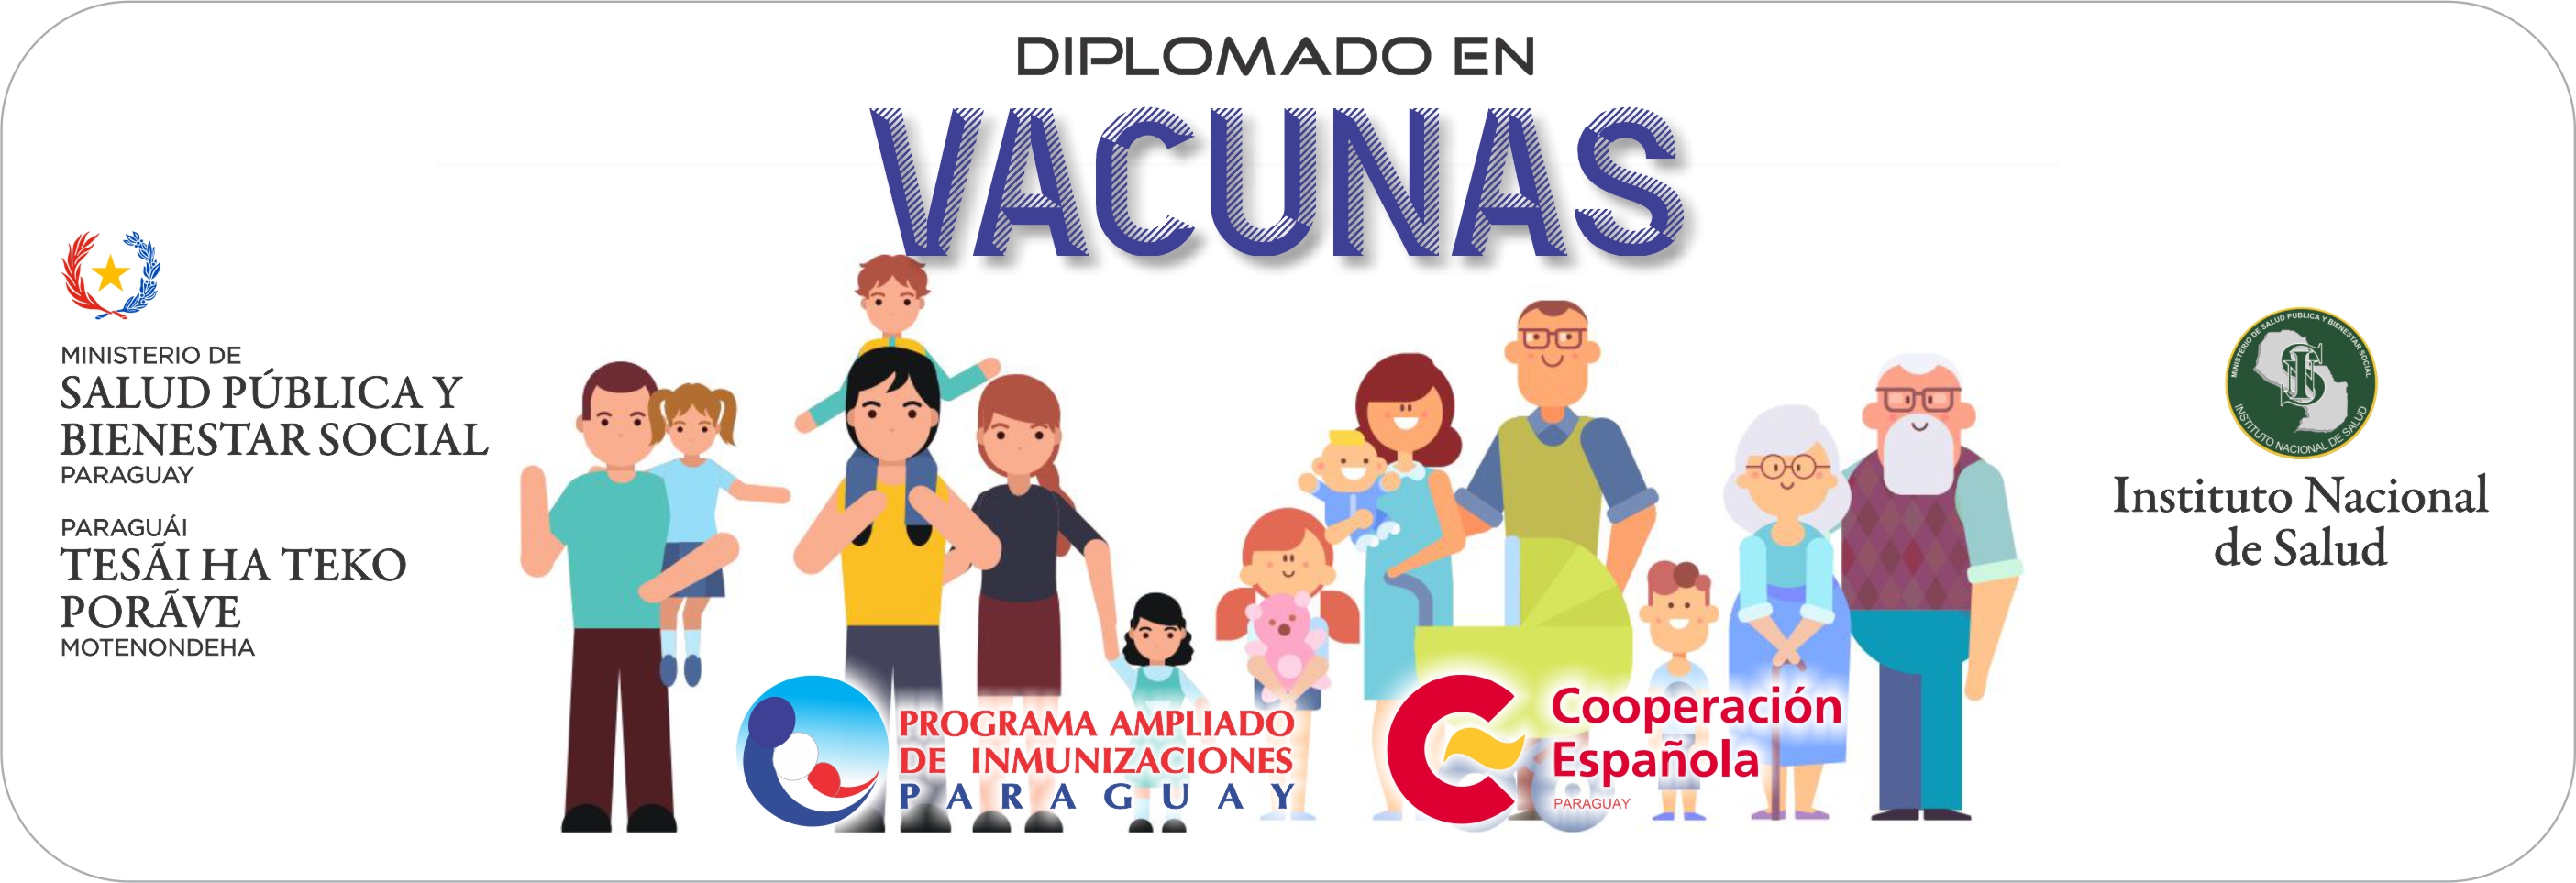 Mejora de atención primaria a través de apoyo al PAI del Paraguay en todo el territorio Nacional